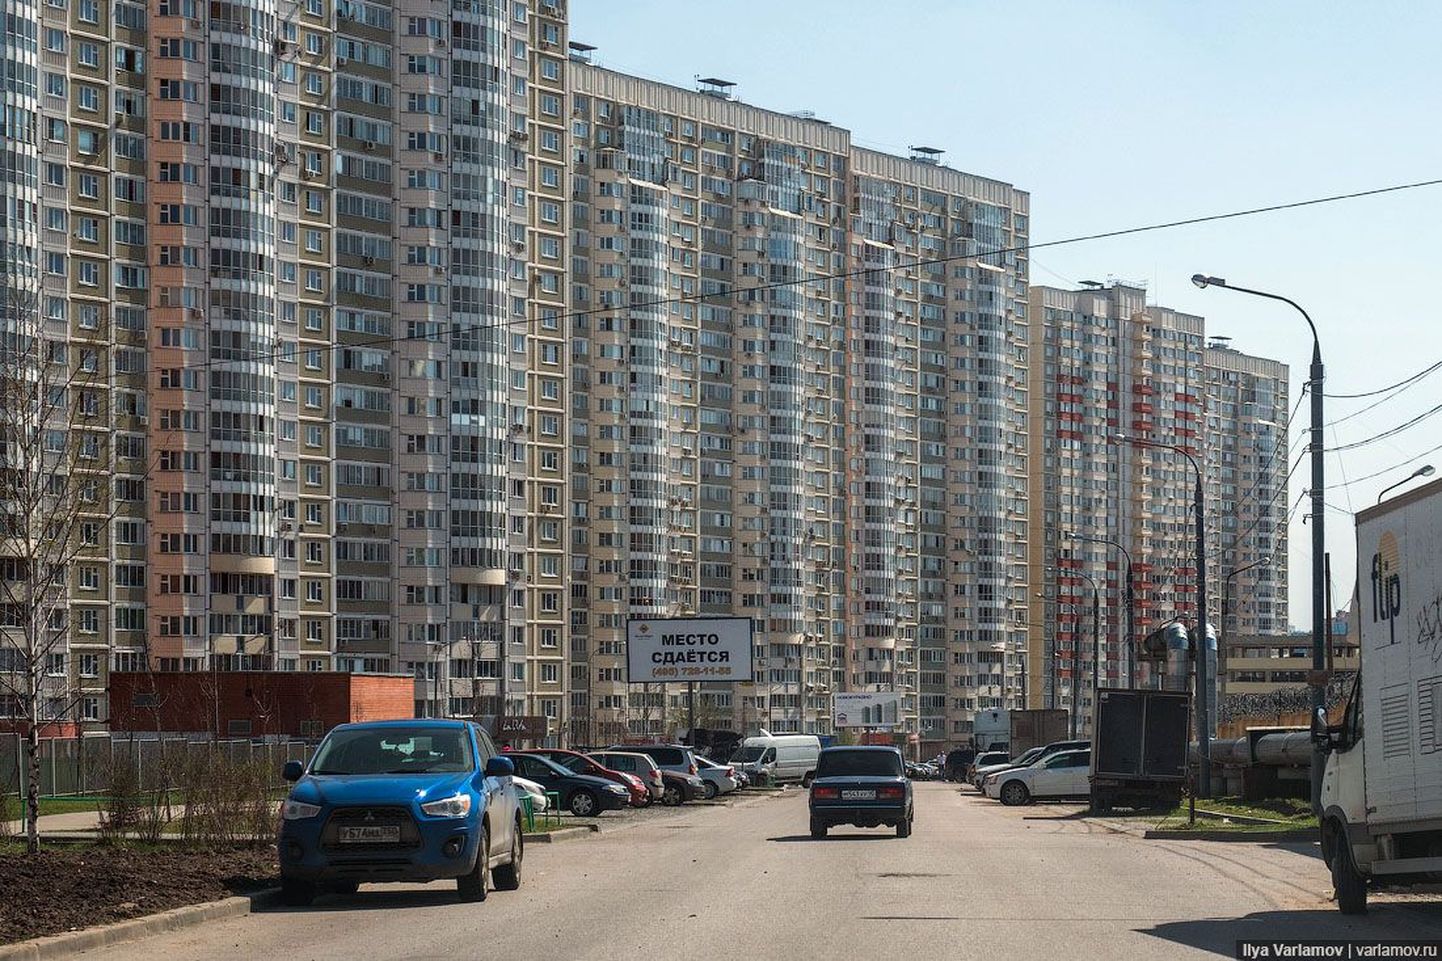 Иллюстративный снимок. Российские многоэтажки.